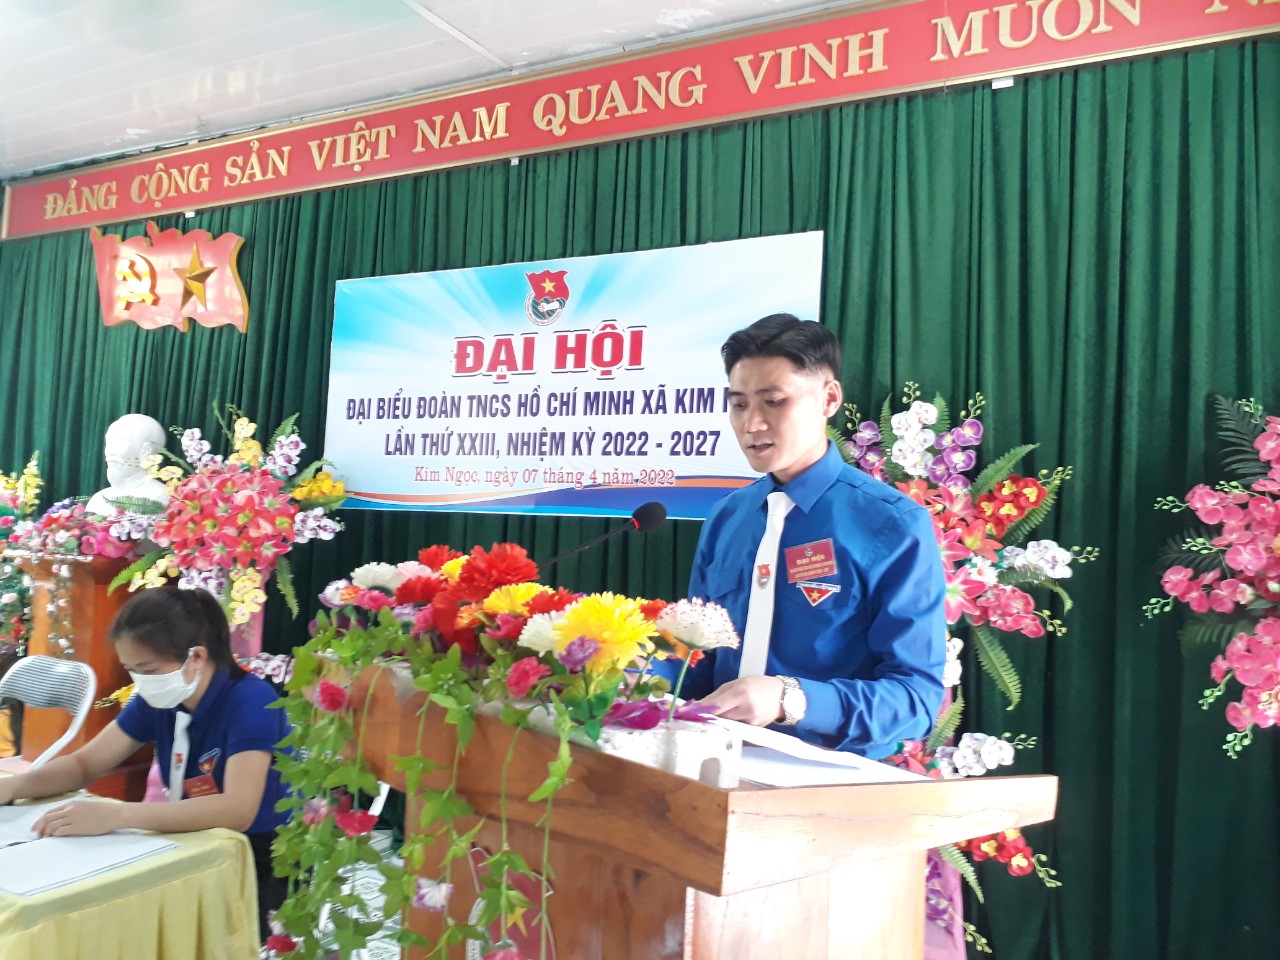 Đại hội đại biểu Đoàn TNCS Hồ Chí Minh xã Kim Ngọc, lần thứ XXIII, nhiệm kỳ 2022 - 2027